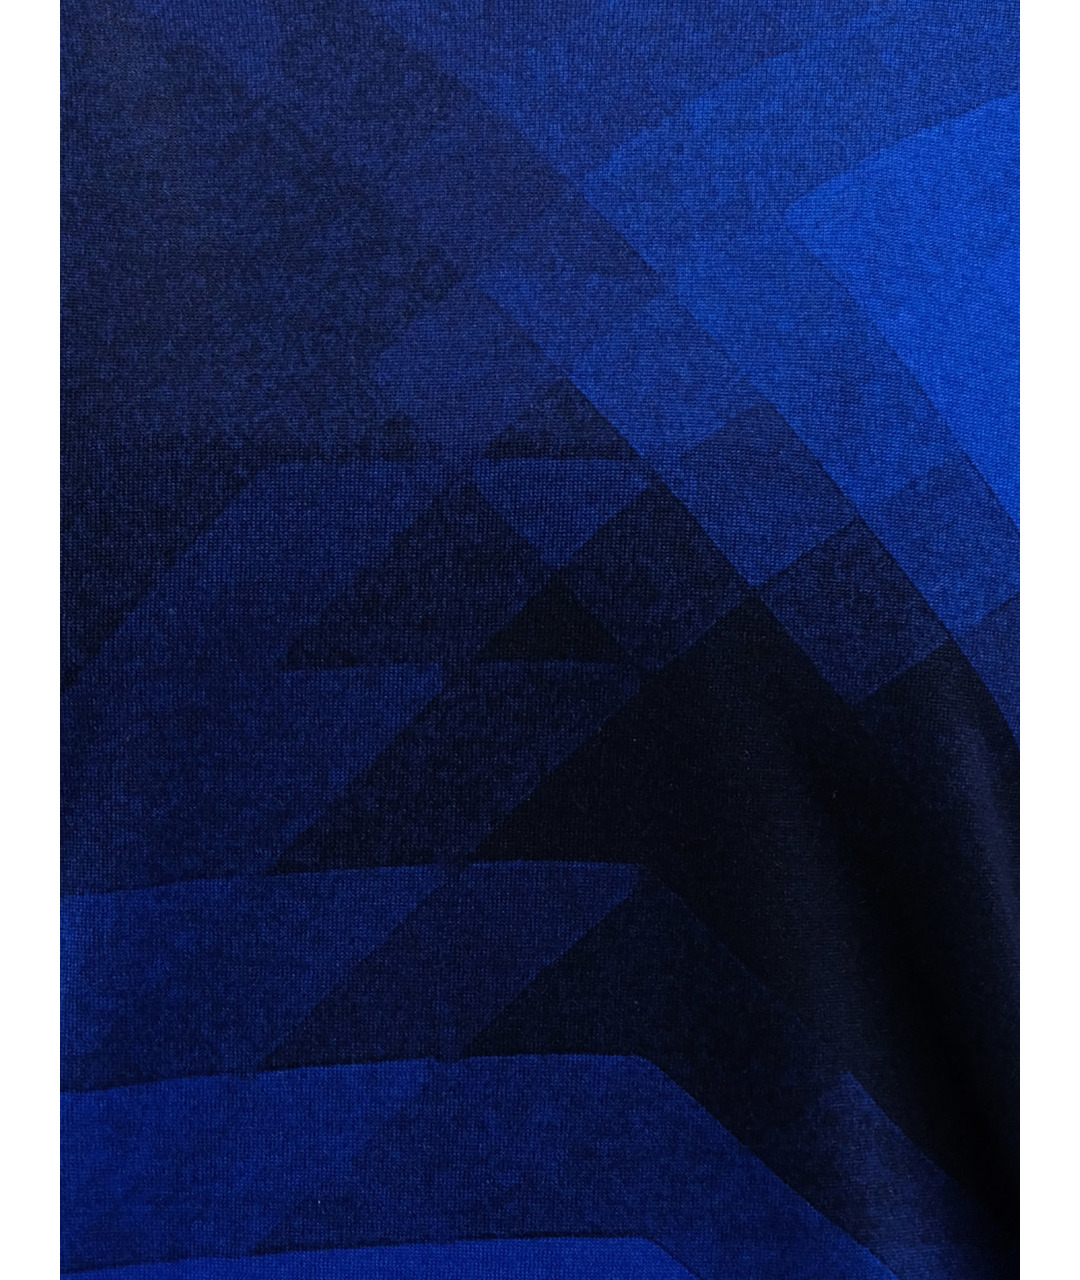 ZILLI Синий кашемировый джемпер / свитер, фото 3